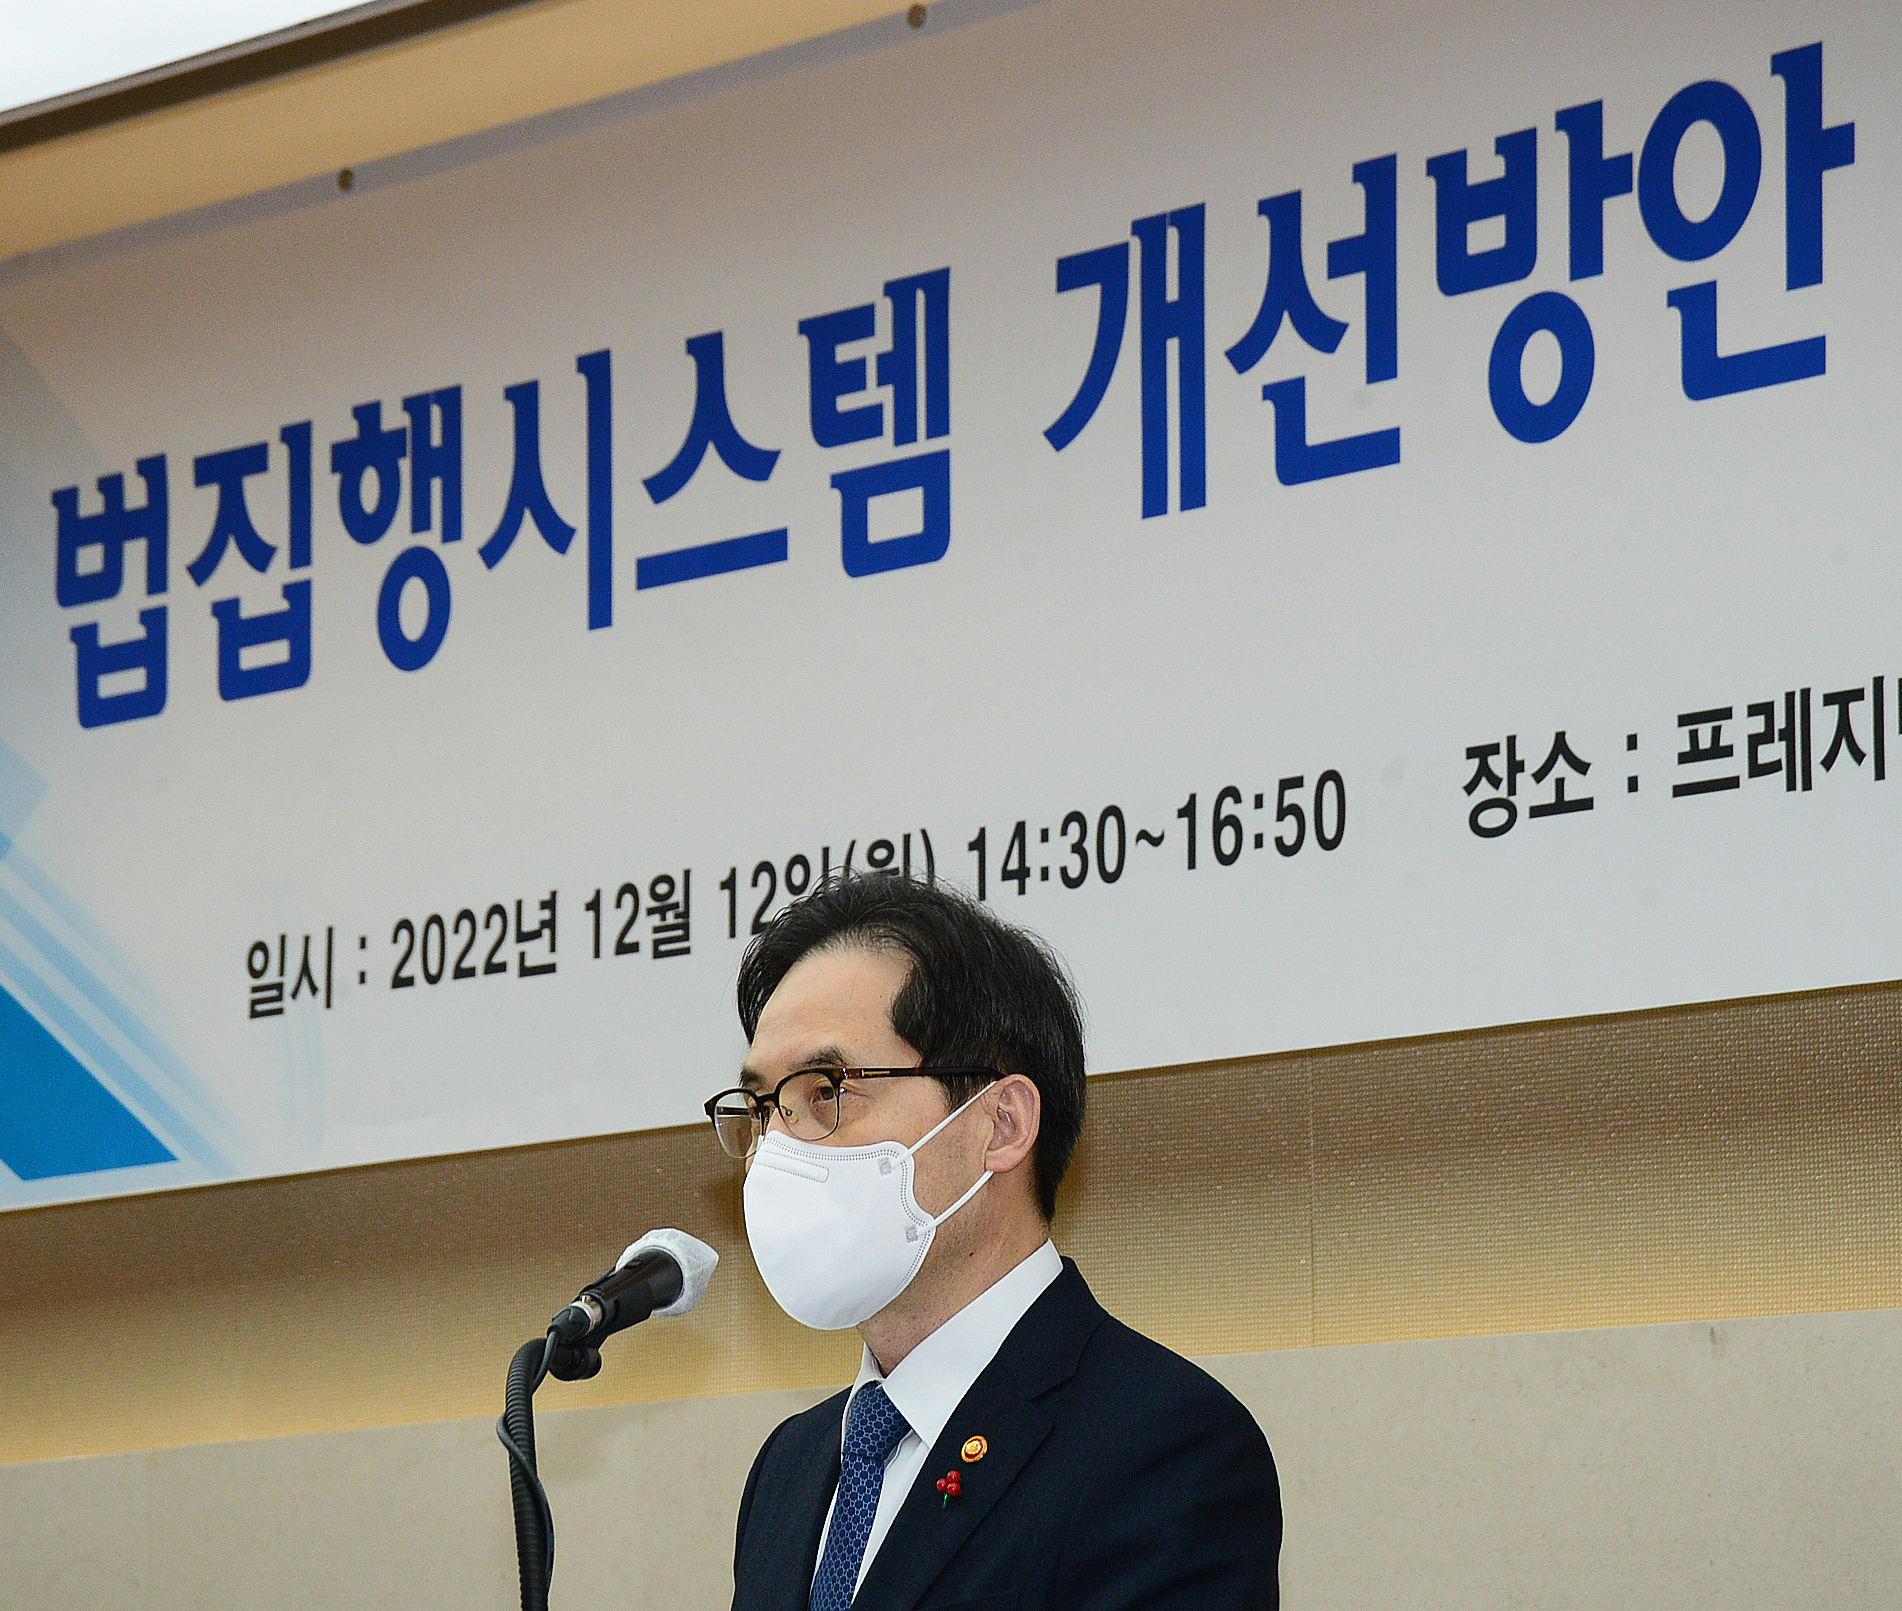 한기정 공정거래위원장이 12일 서울 프레지던트호텔에서 열린 법 집행시스템 개선 방안 마련을 위한 토론회에서 인사말을 하고 있다. 공정거래위원회 제공